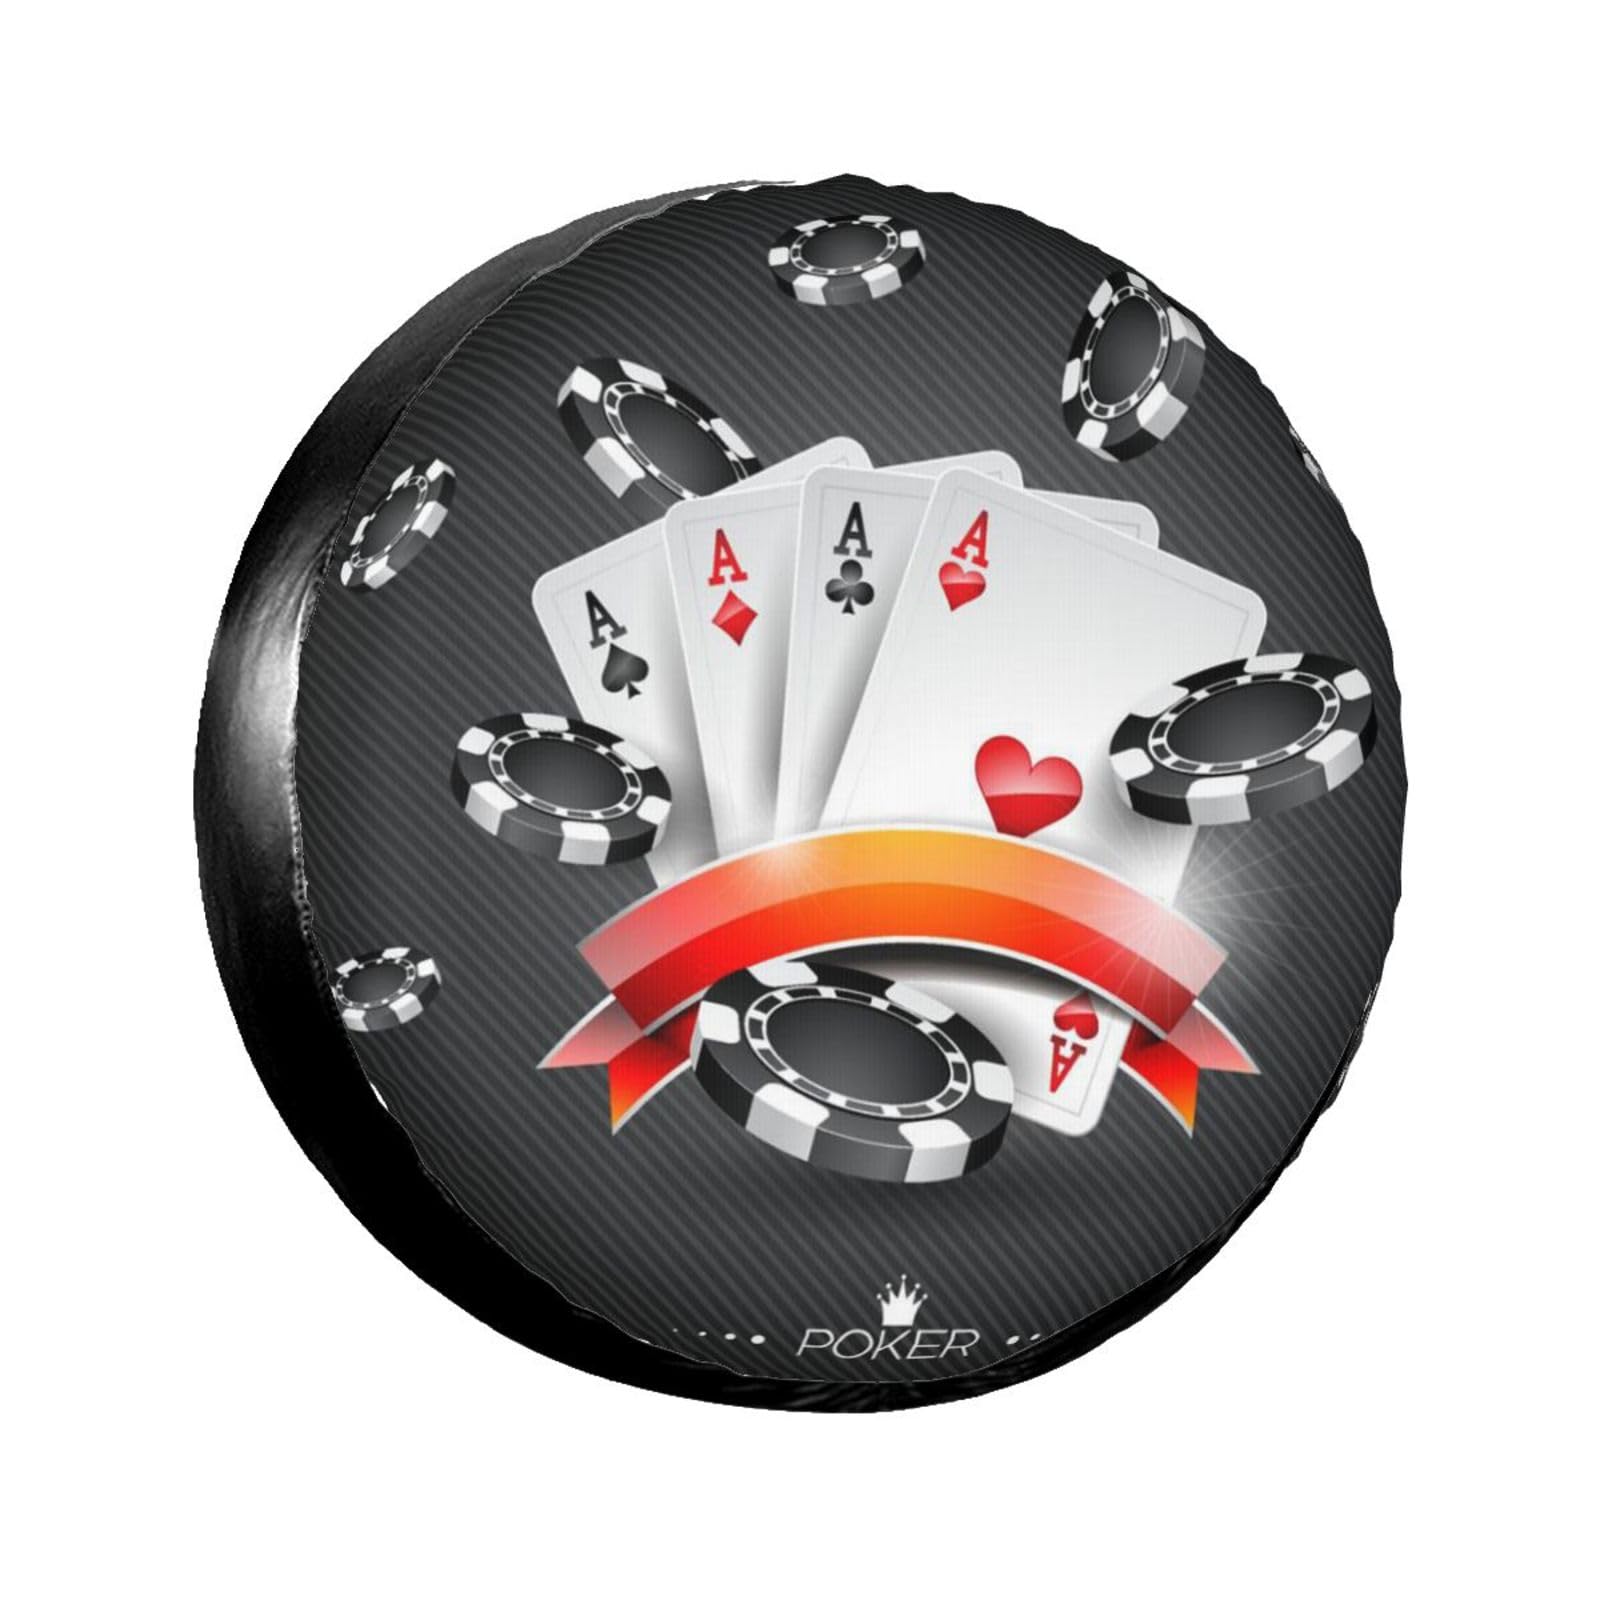 Poker-Turnier-Druck, überlegener Reifenschutz, Voll-Suite-Design, Radabdeckung, ultrastark, wasserdicht und sonnenfest, Polyester-Reifenschutz von HYSDPUZK